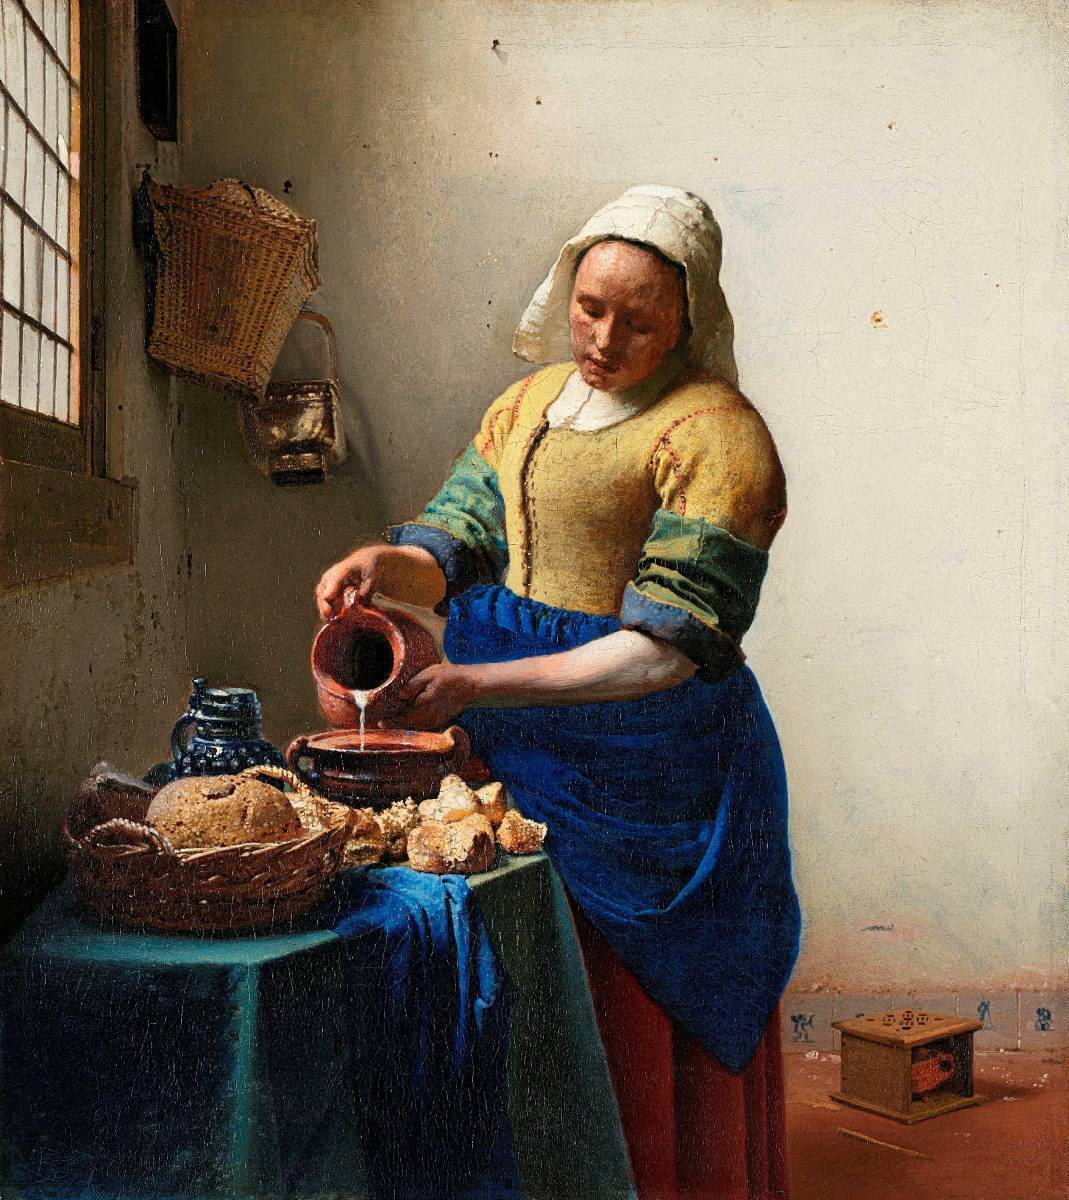 Nouvelle impression de haute qualité de La Laitière de Vermeer Grand format A3 Sans cadre Prix spécial 1800 yens (frais de port inclus) Achetez-le maintenant, Ouvrages d'art, Peinture, autres